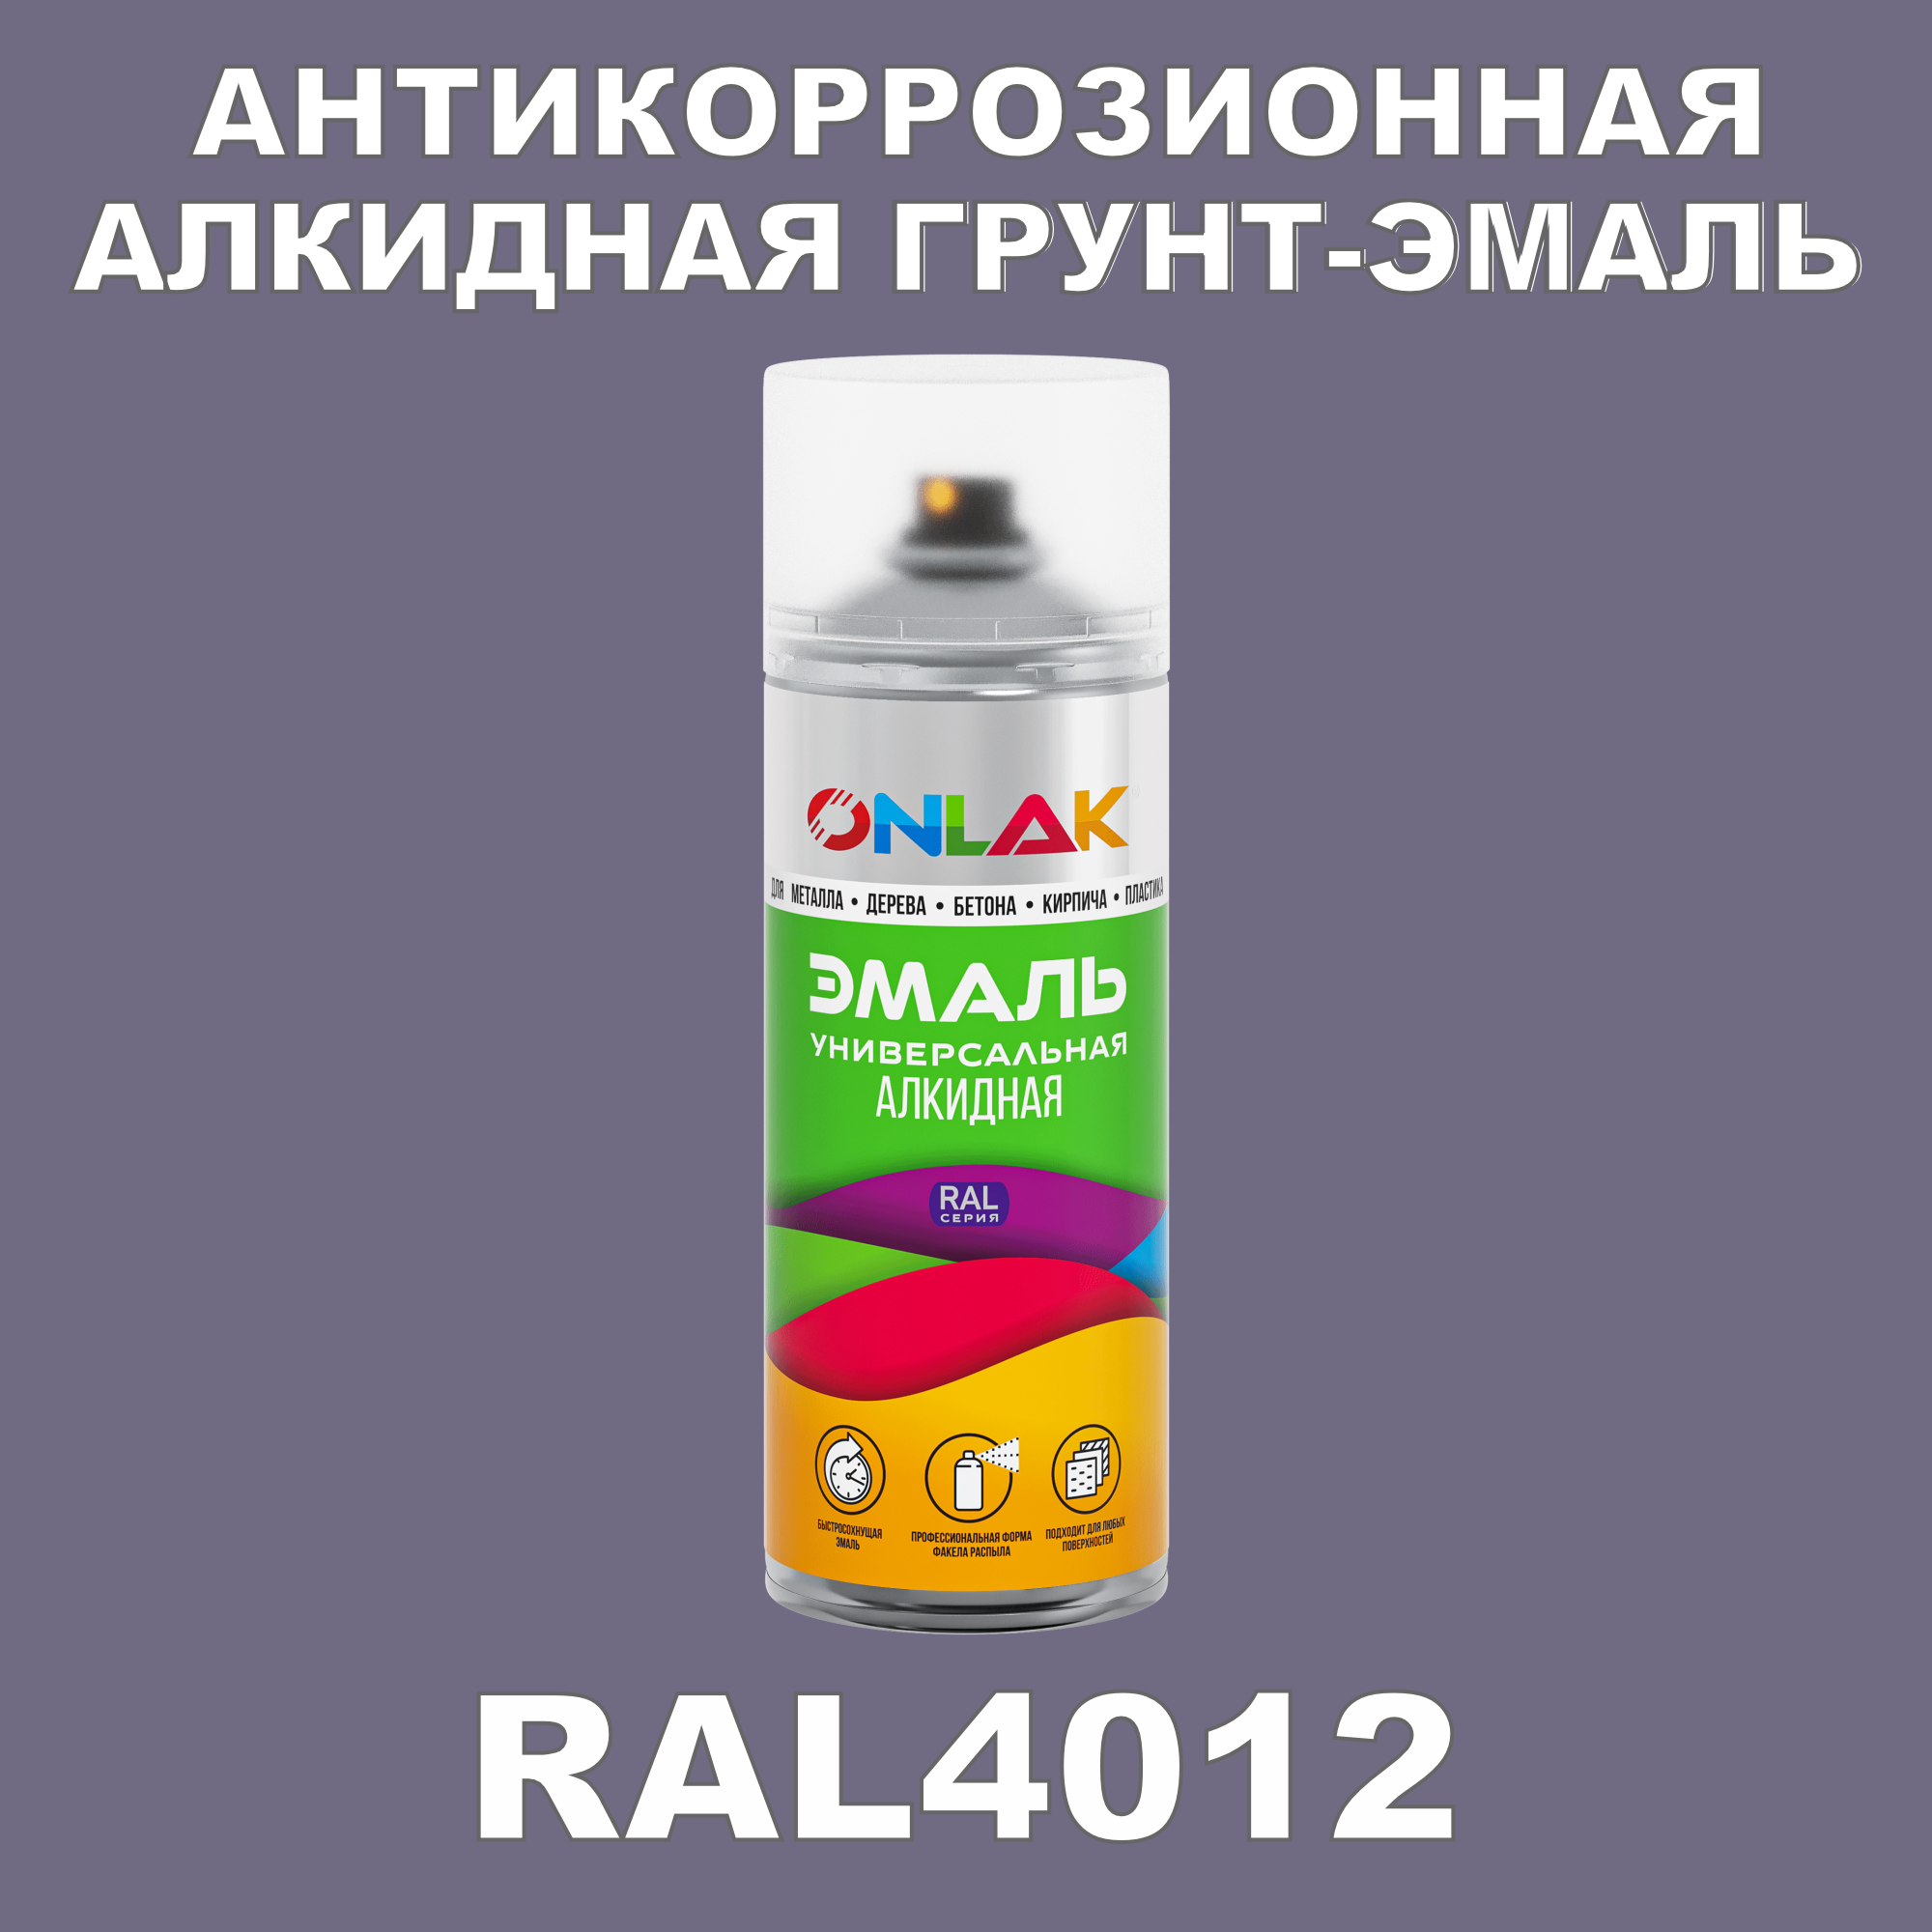 Антикоррозионная грунт-эмаль ONLAK RAL 4012,фиолетовый,715 мл